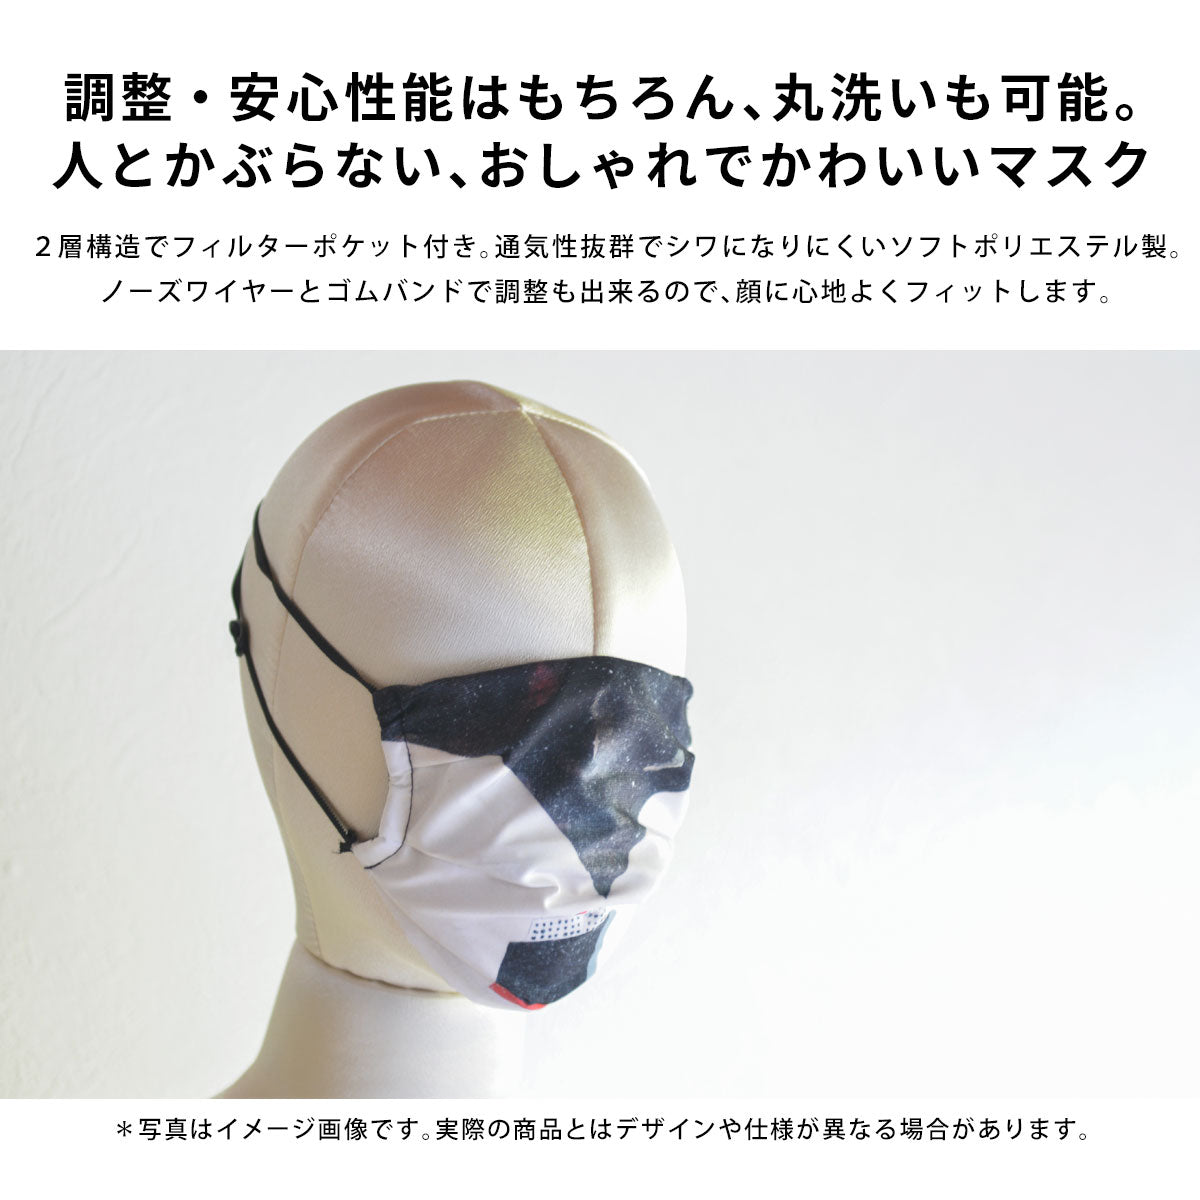 洗えるプリーツマスク。ポリエステル製、耳ひものサイズ調整可能。